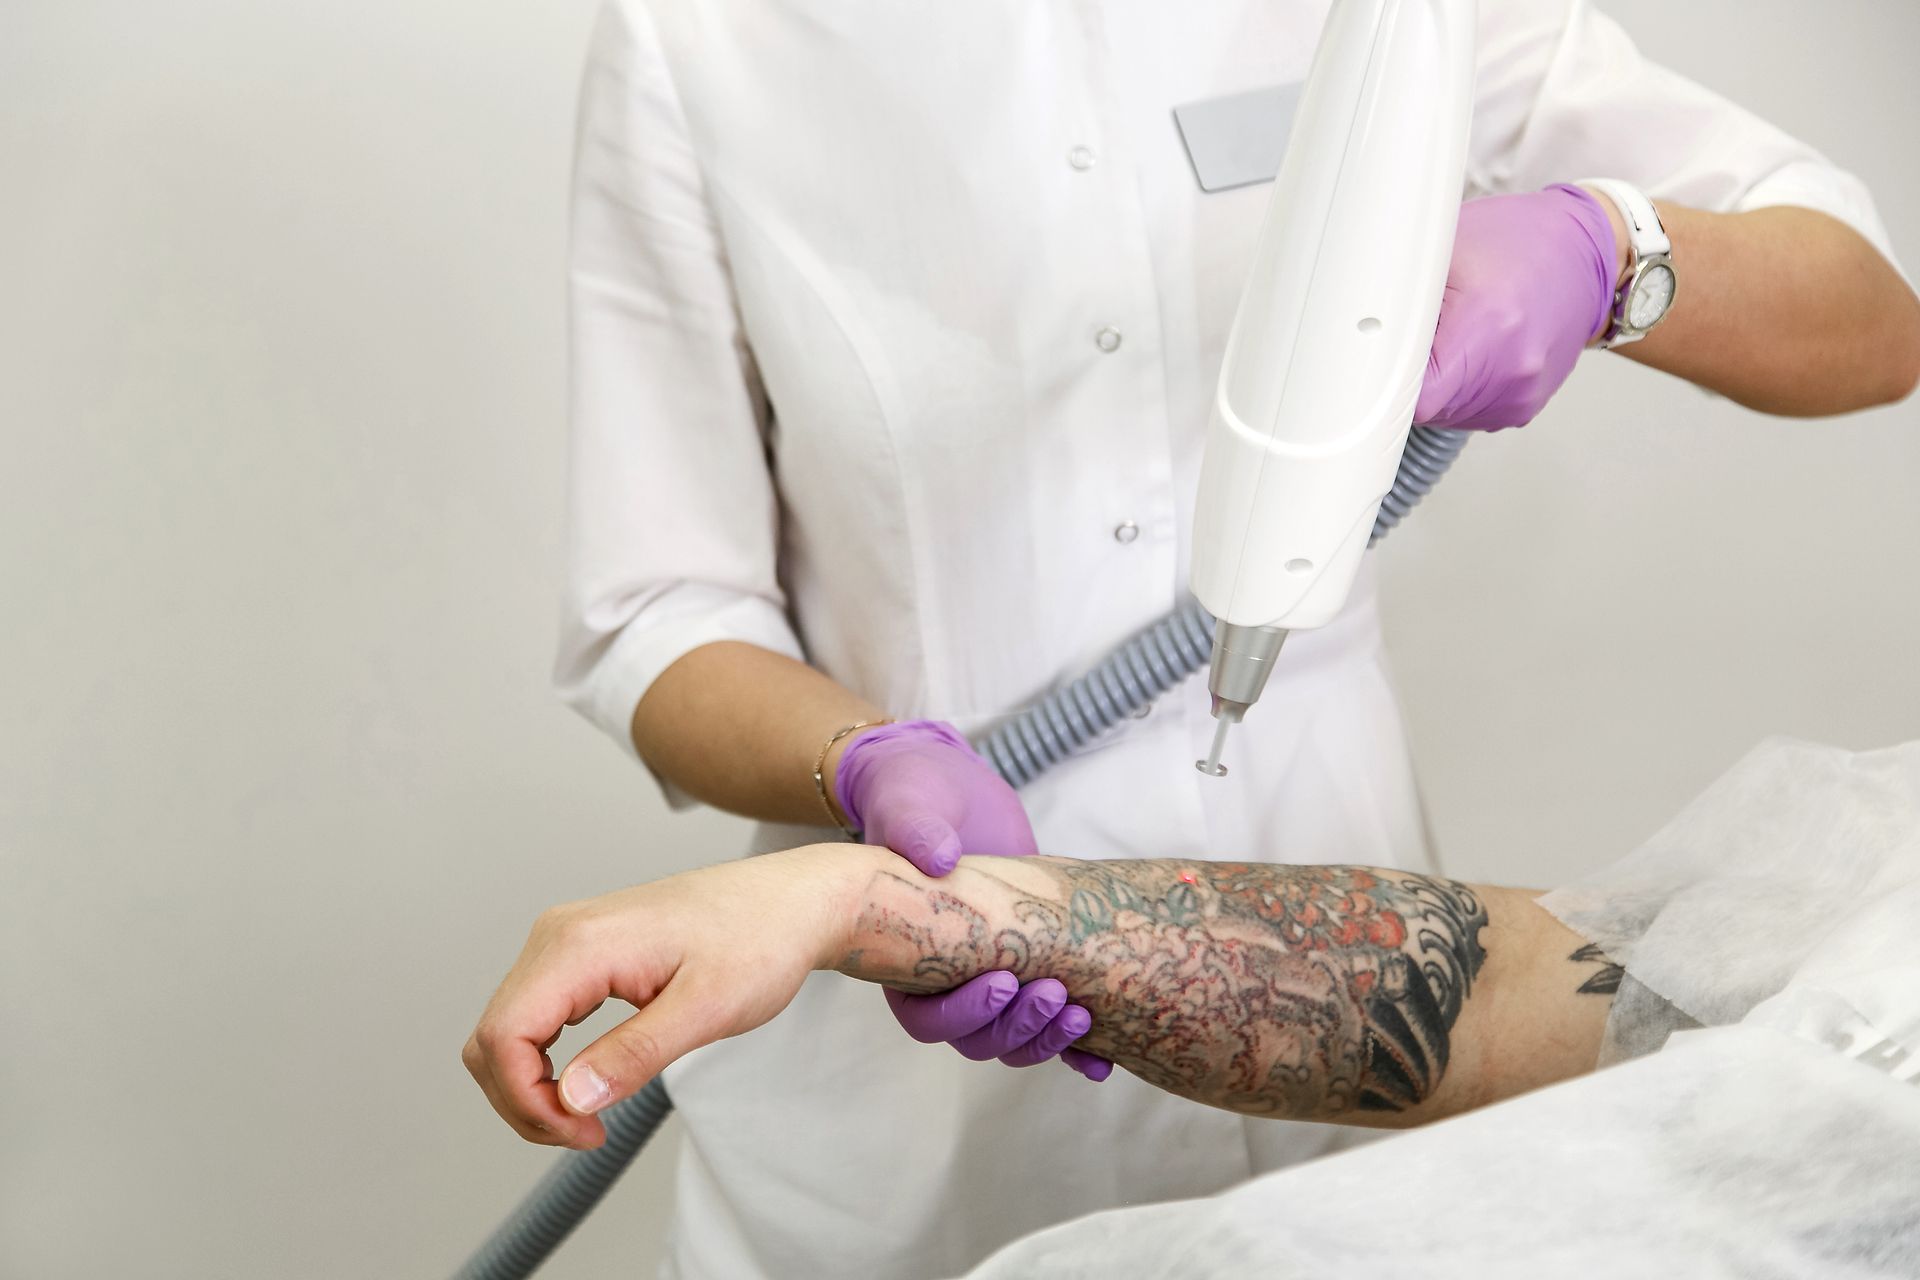 tattoo removal procedure